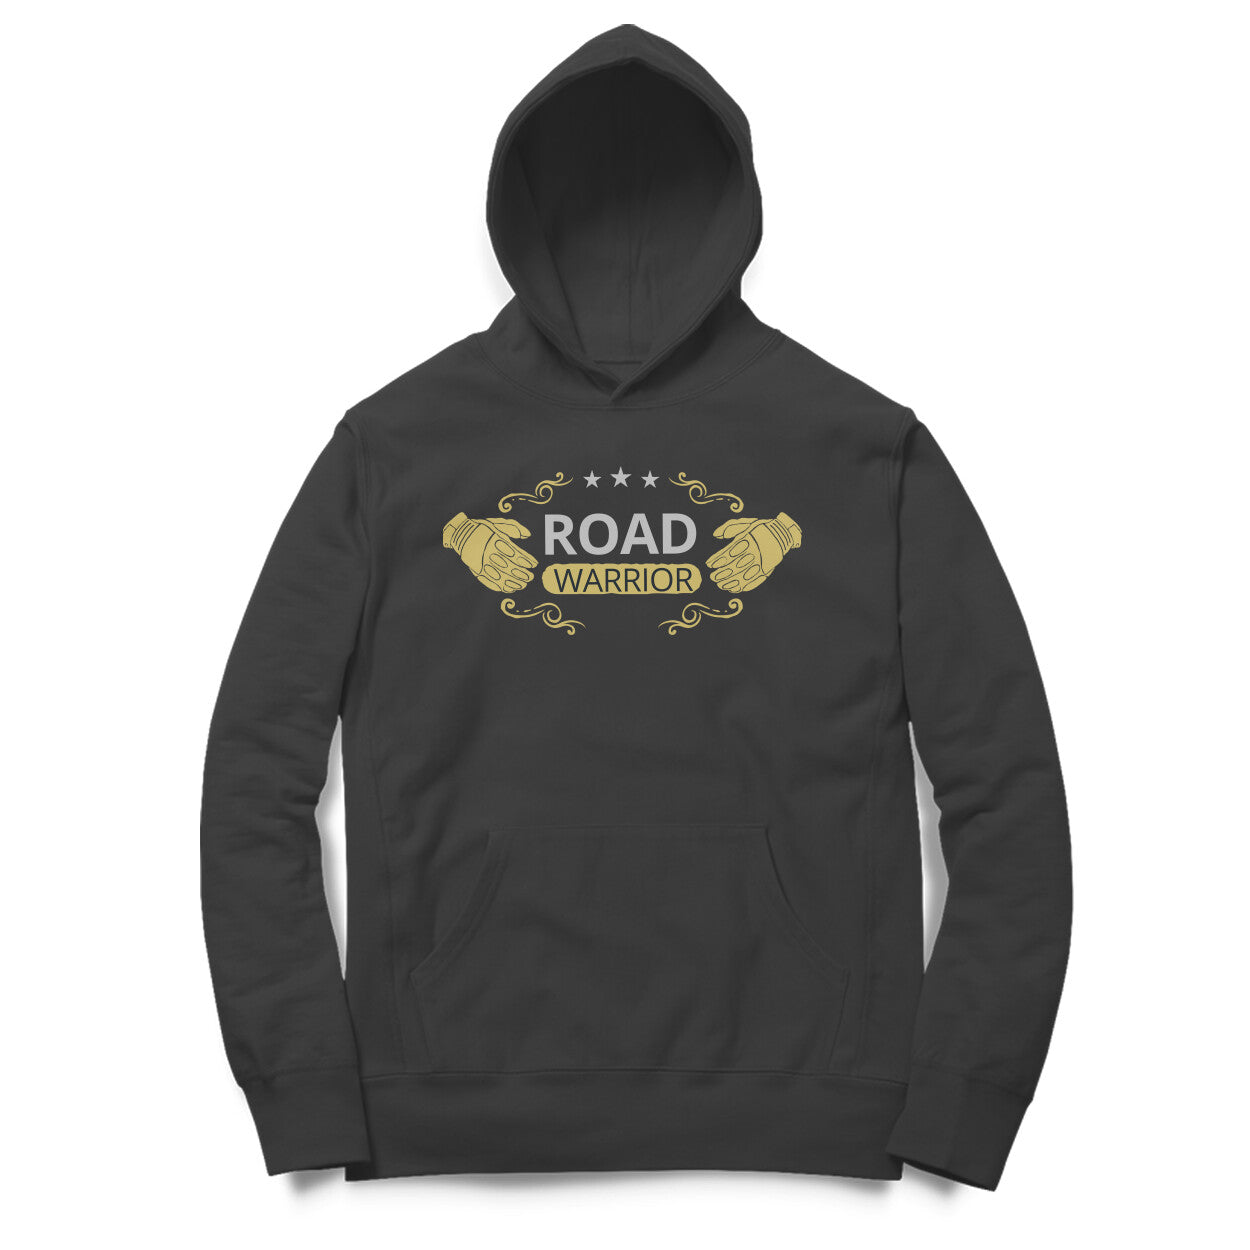 Bilkool Road Warrior Cotton Hoodies